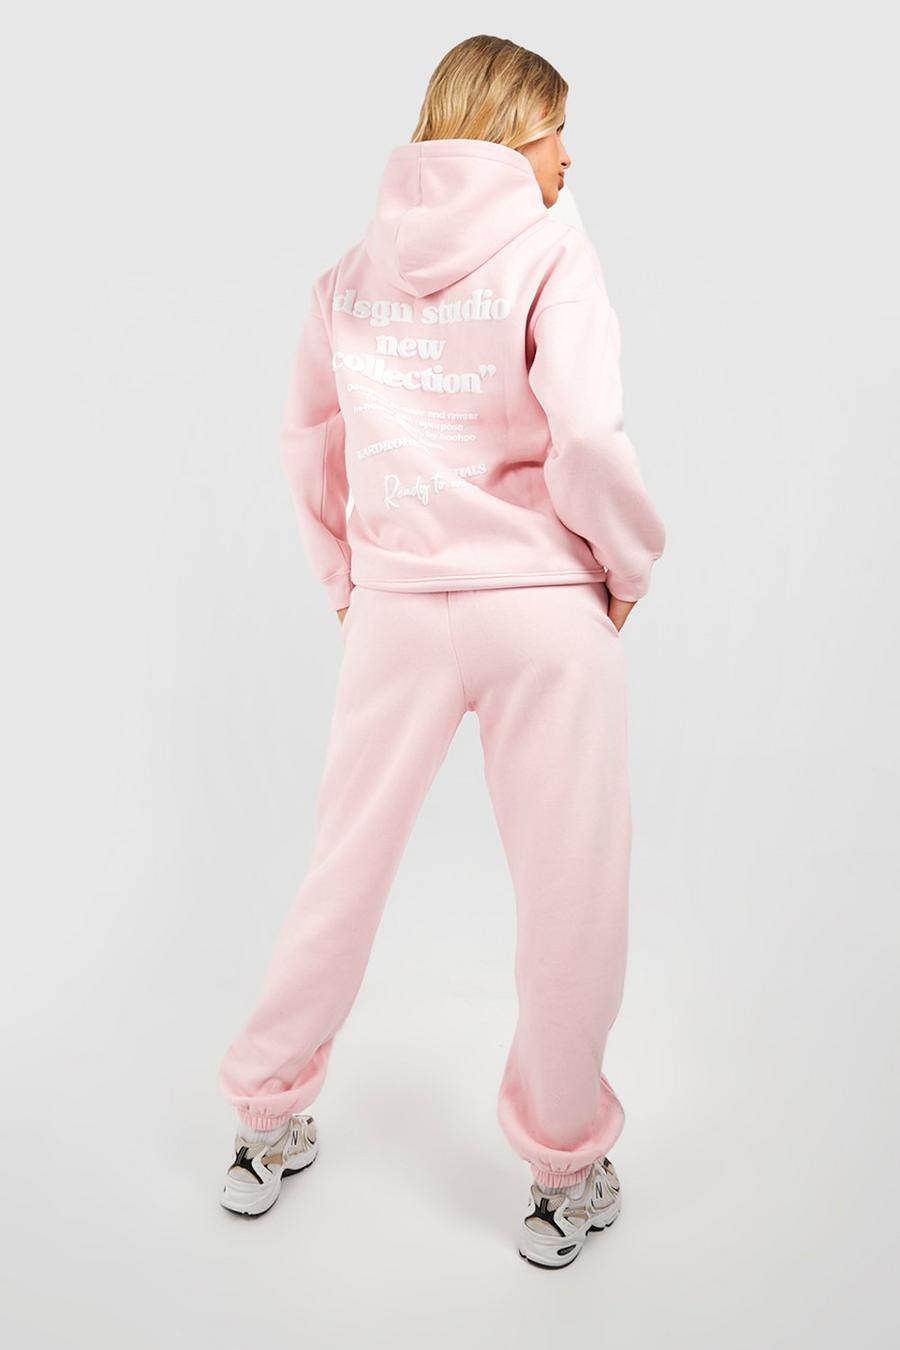 Chándal Dsgn Studio con capucha y eslogan en relieve, Light pink